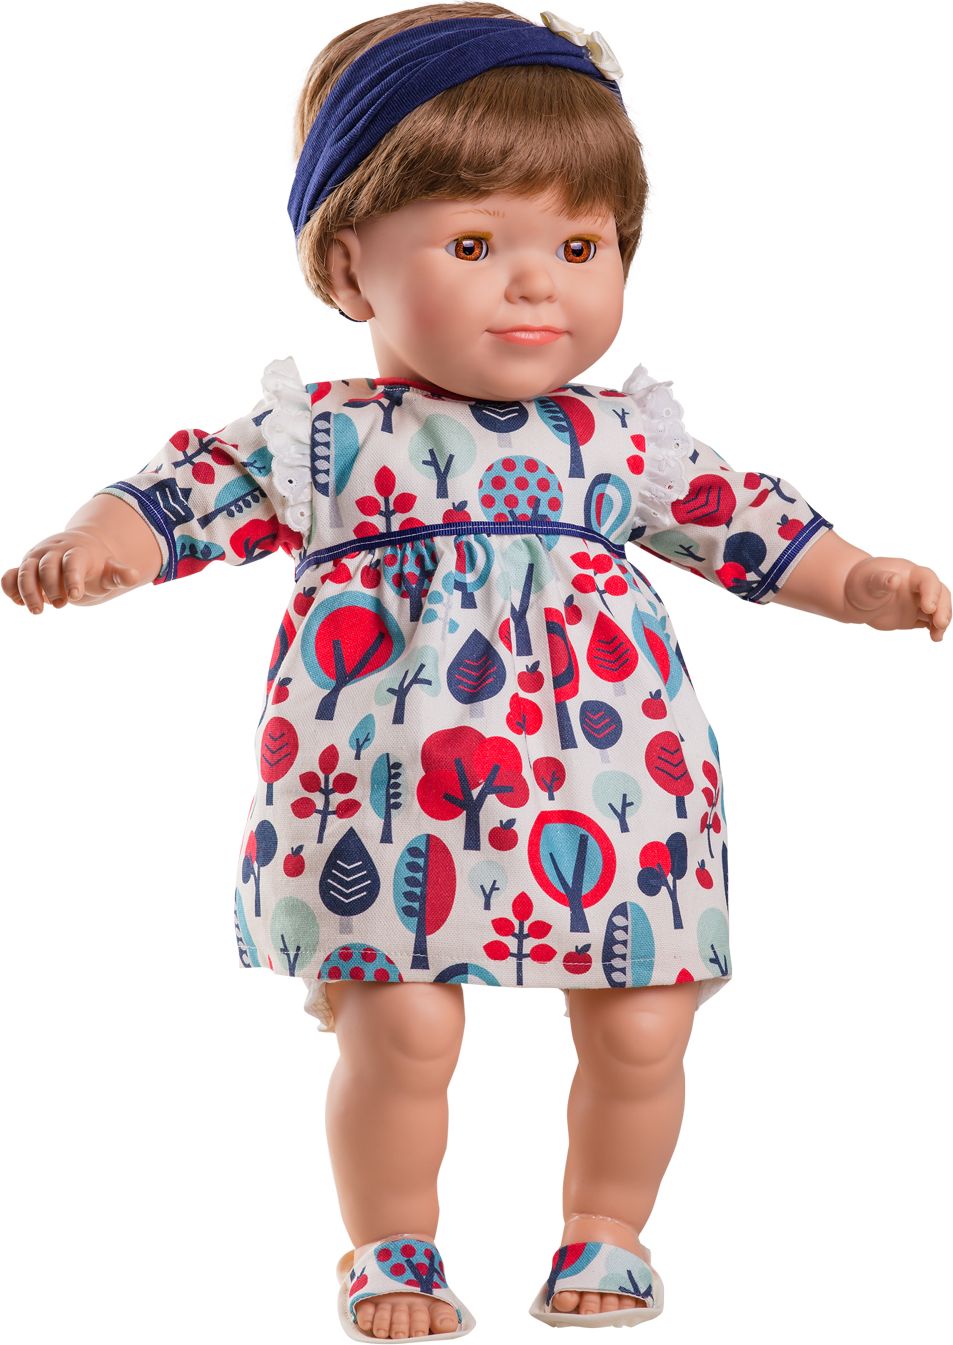 Realistická mrkací panenka Natalia od firmy Paola Reina - obrázek 1